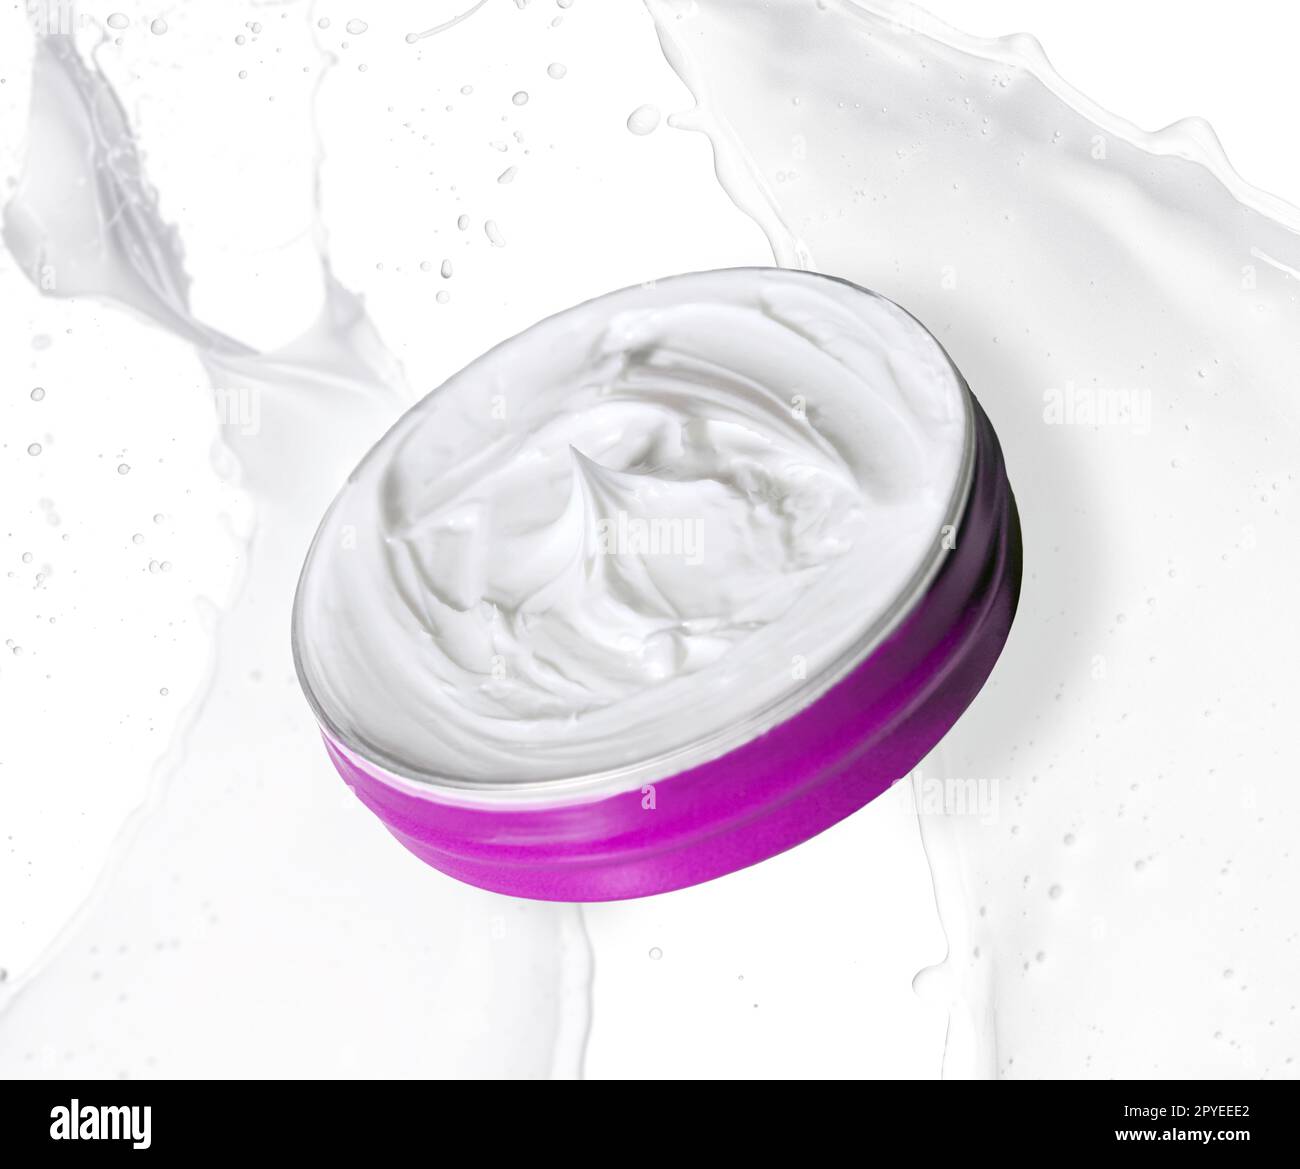 Crema bianca generica per cosmetici. Foto adattabile a qualsiasi prodotto da pubblicizzare. Foto Stock